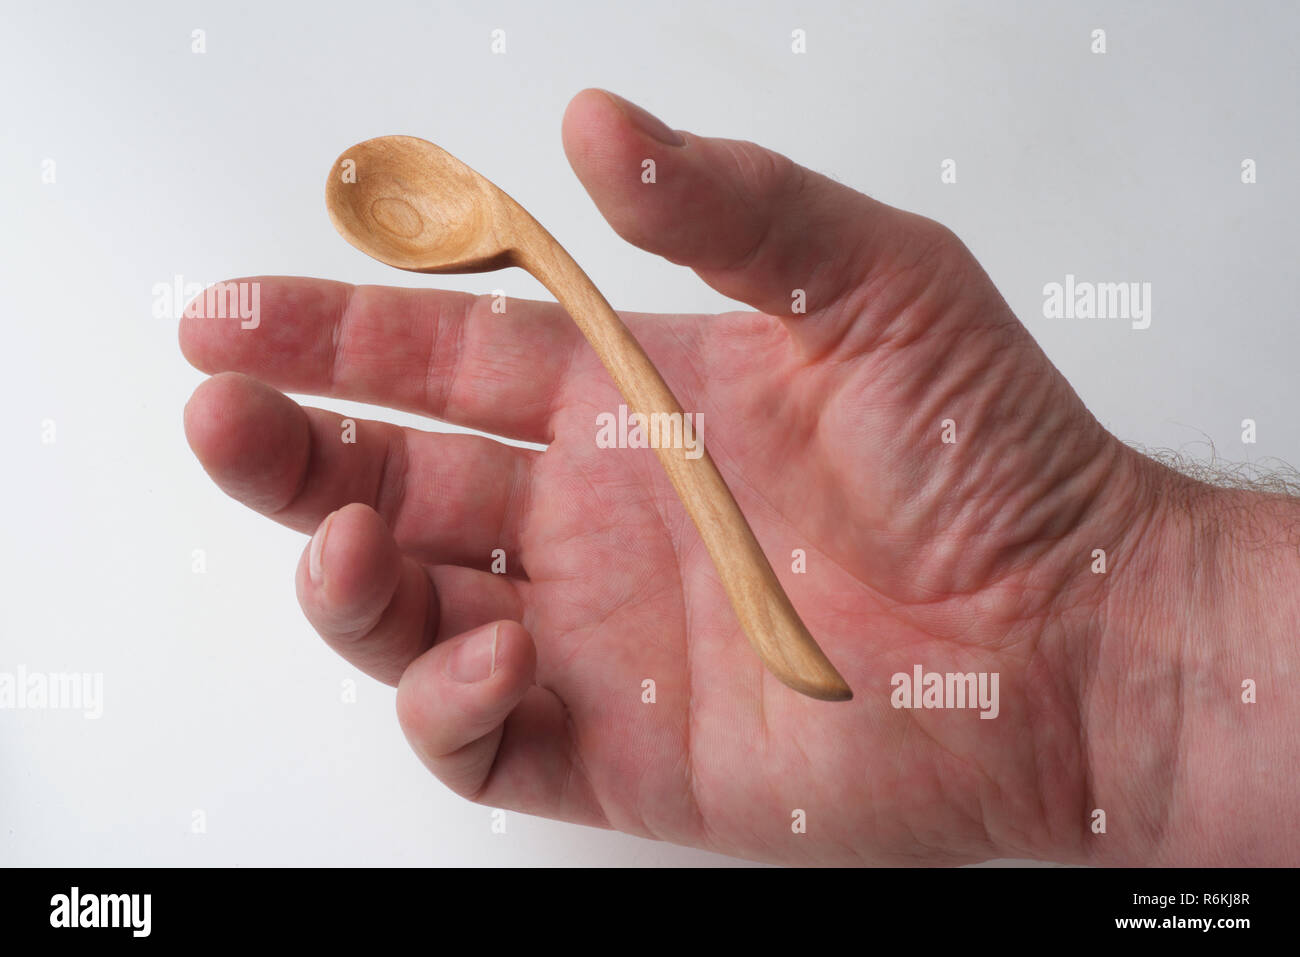 Eine männliche Hand erreicht eine handgefertigte Holzlöffel zu erfassen, auf einem weißen Hintergrund. Stockfoto